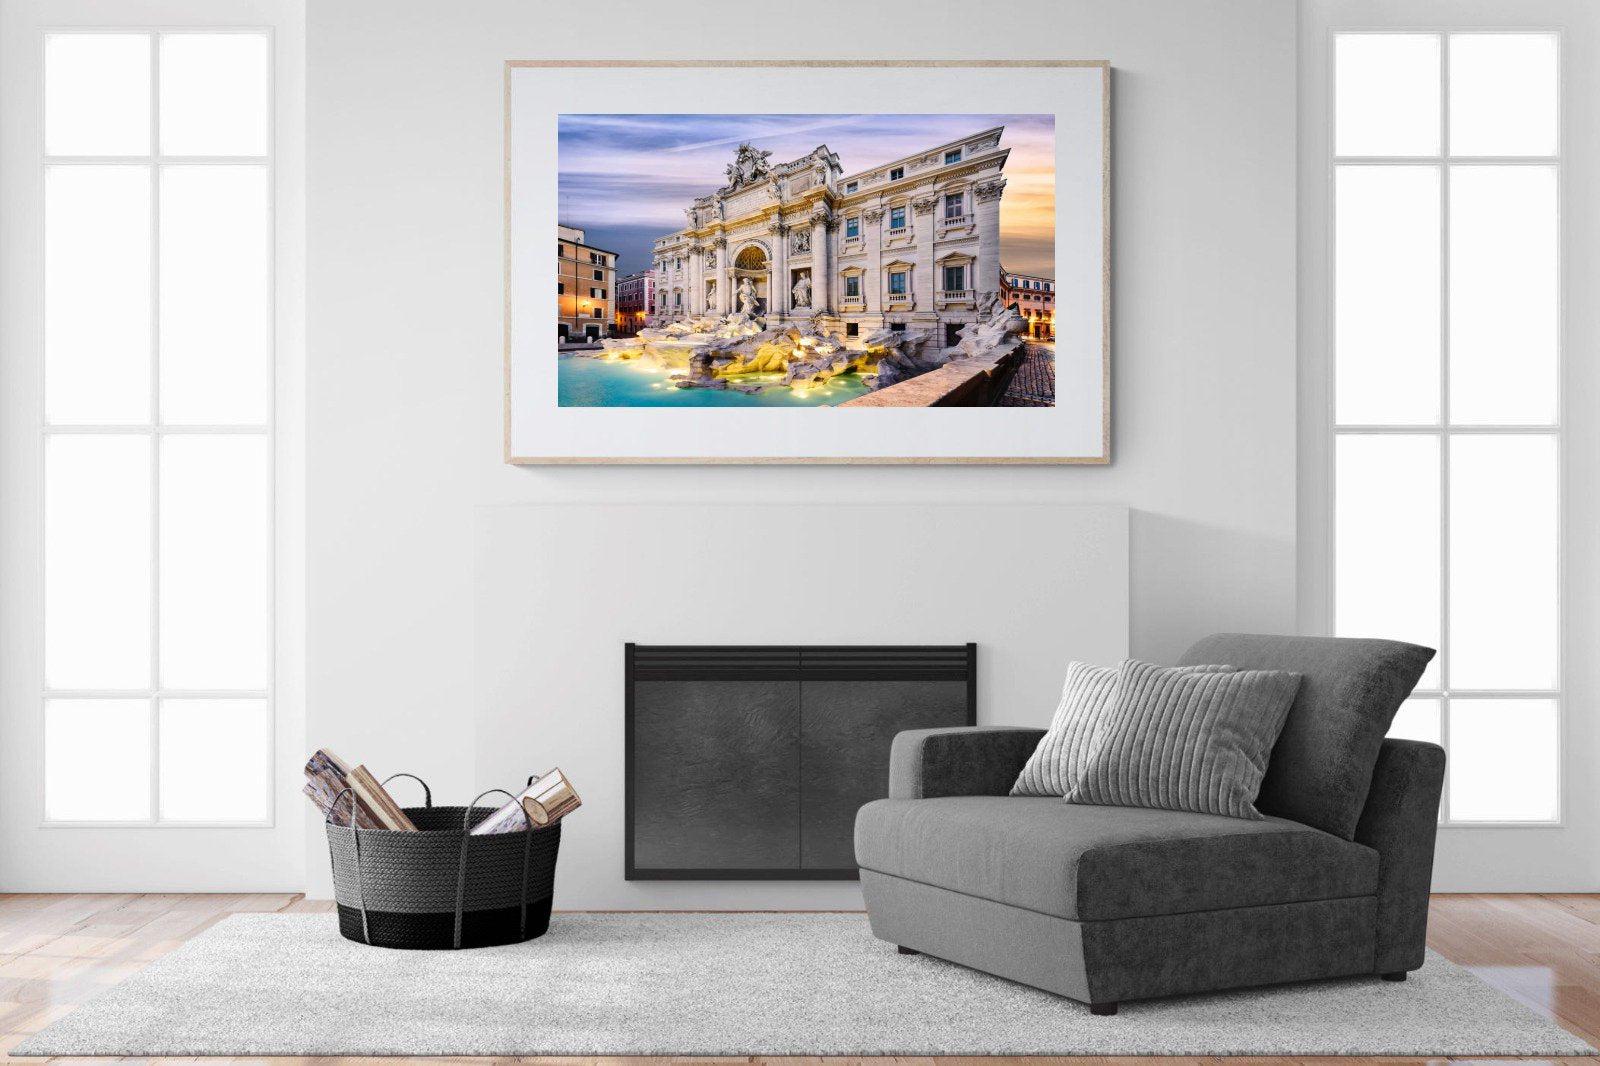 Fountain di Trevi-Wall_Art-150 x 100cm-Framed Print-Wood-Pixalot